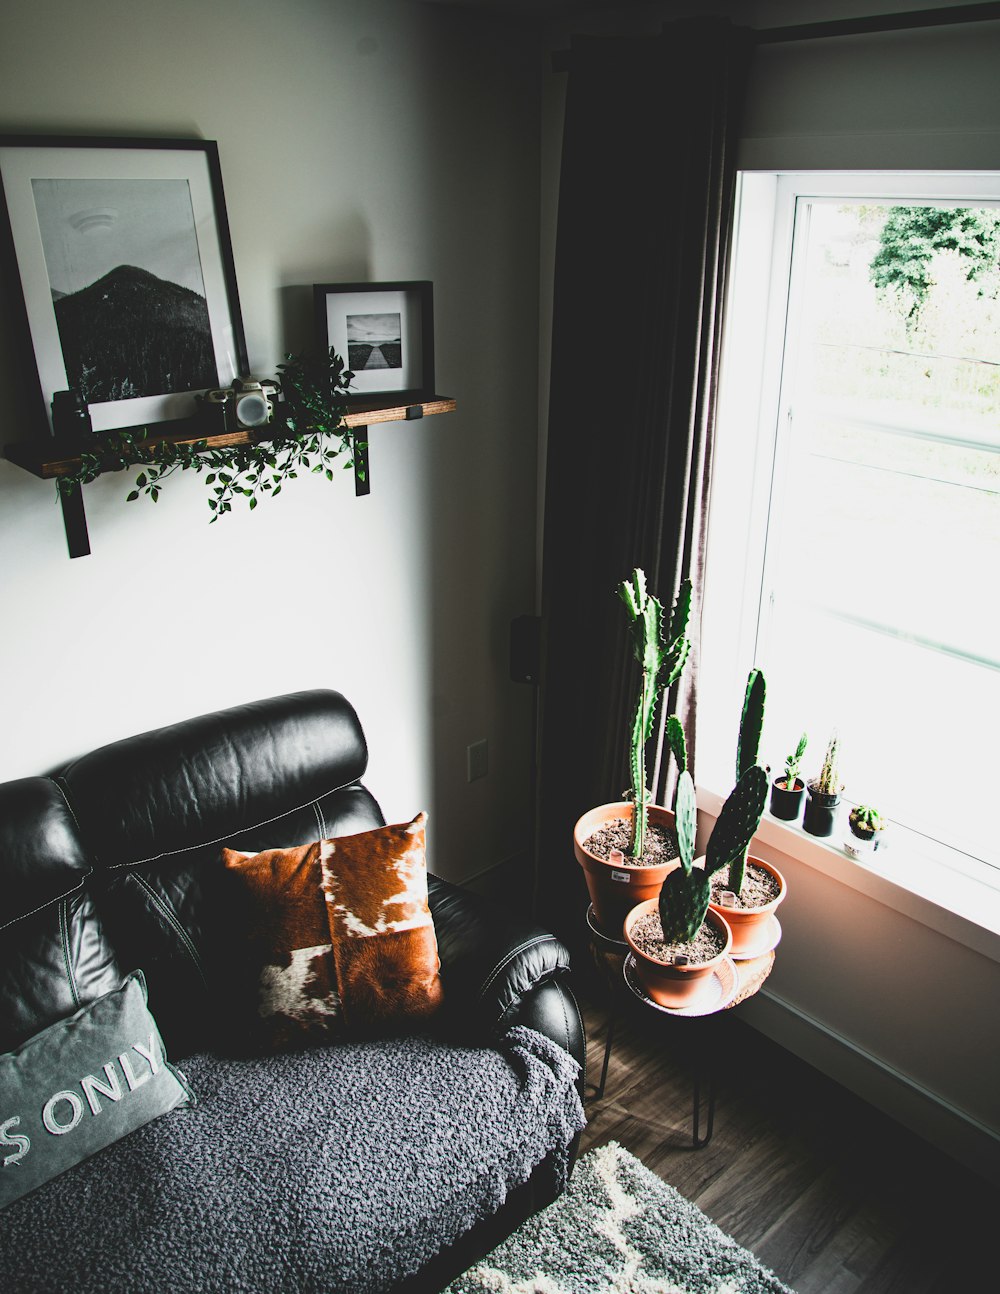 緑のサボテンの植物の横の黒いソファに茶色の枕を投げる